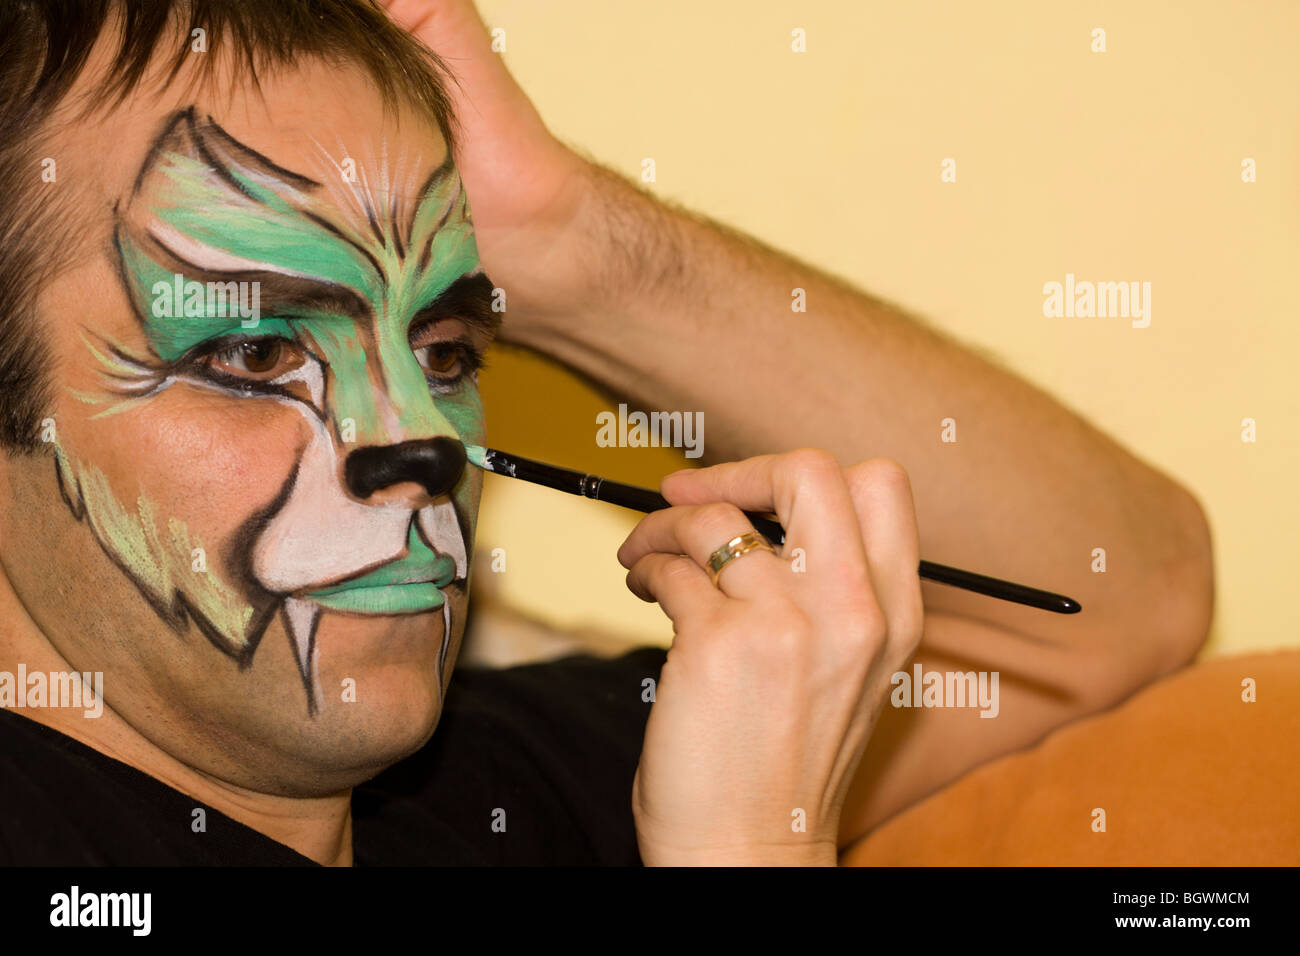 Trucco artisti pittura sul viso dell'uomo. Foto Stock